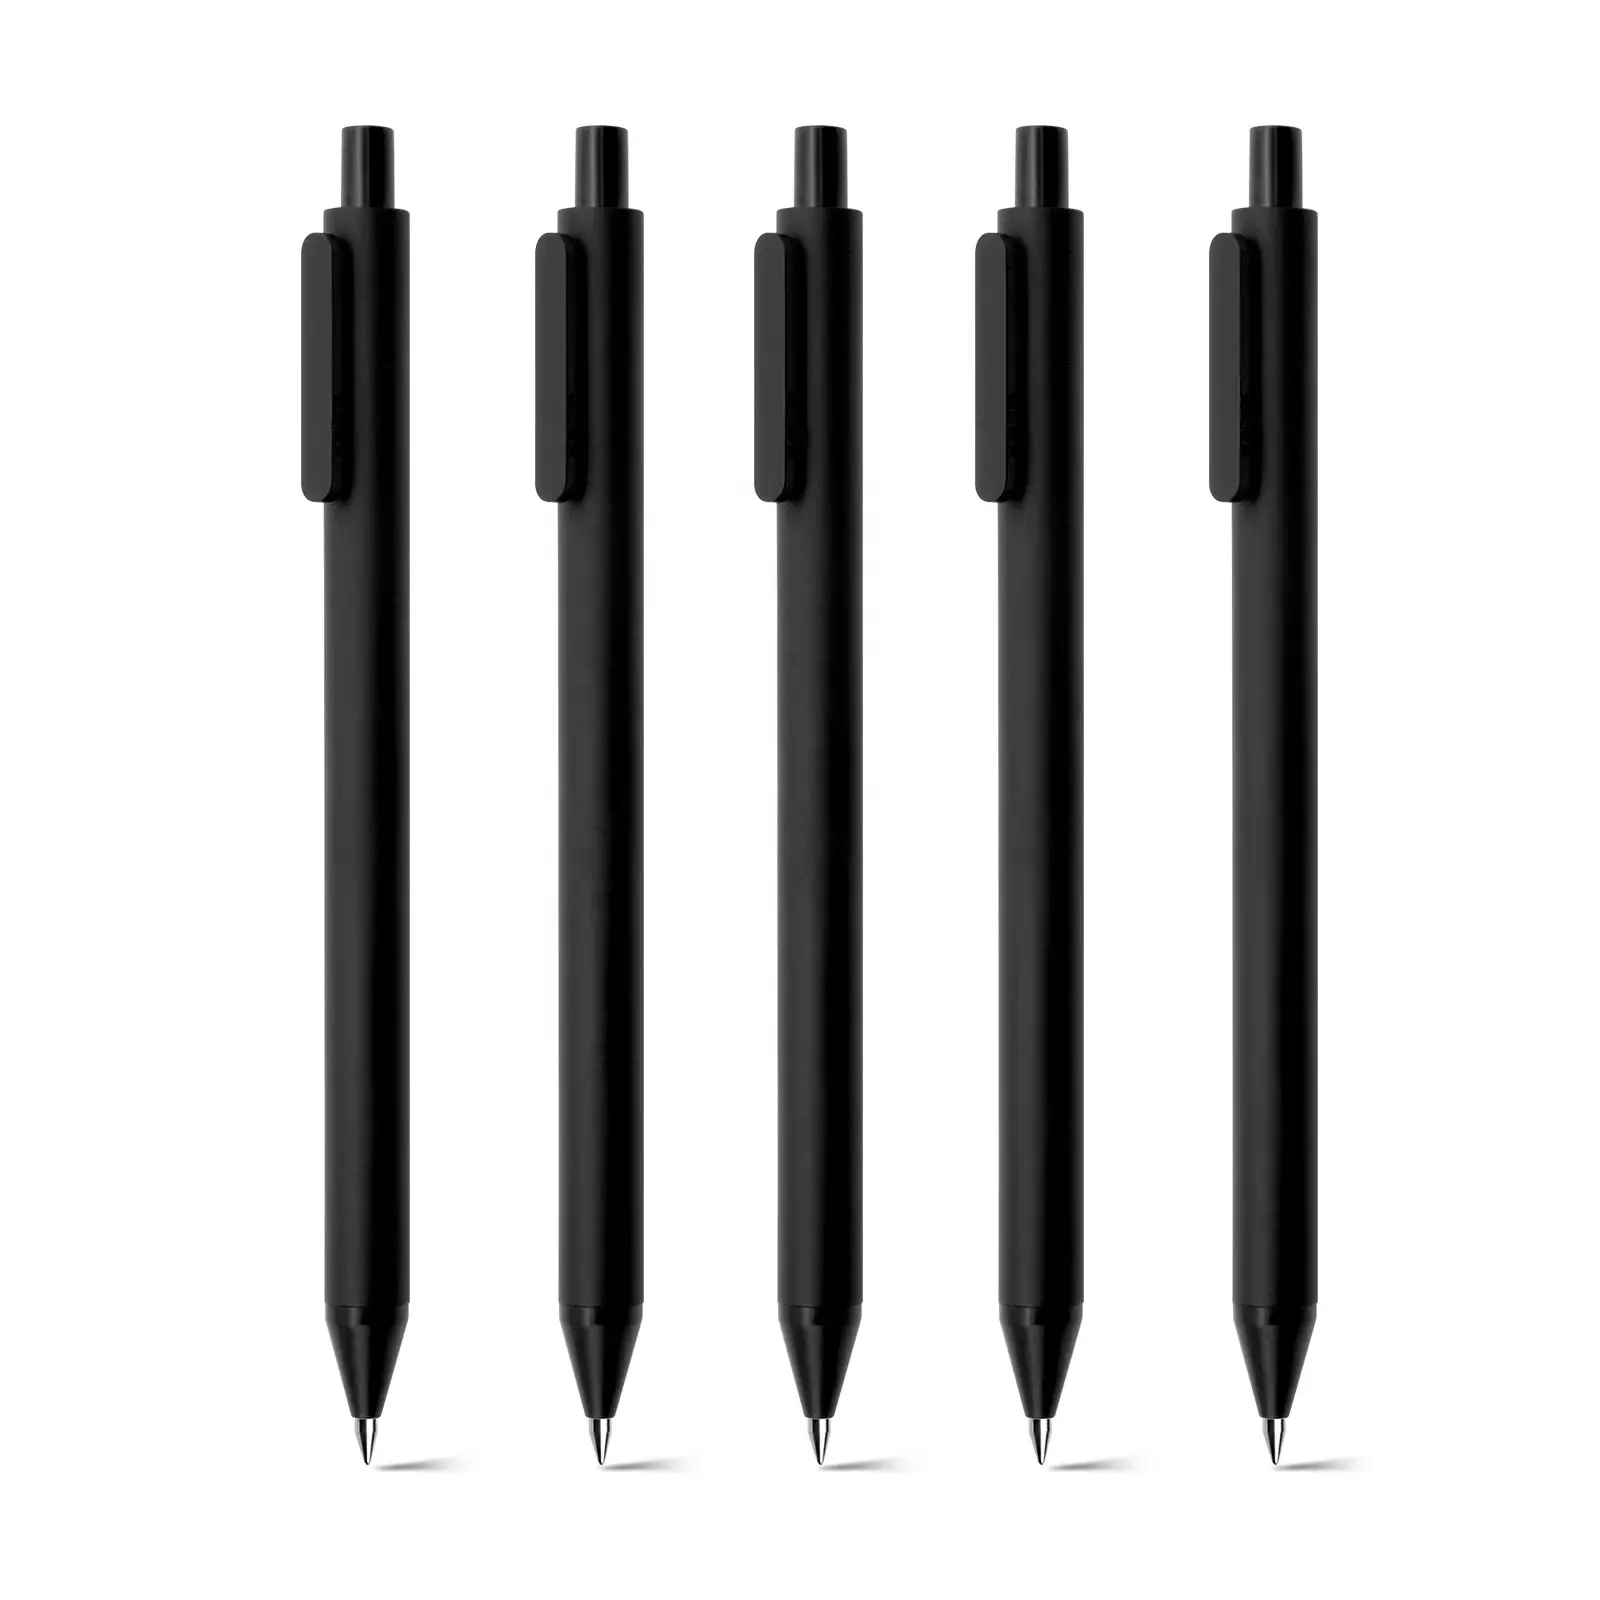 Stylos à bille KACO PURE noir, design original, pointe 1.0/1.2mm, fournitures de bureau, papeterie scolaire mignonne promotionnelle